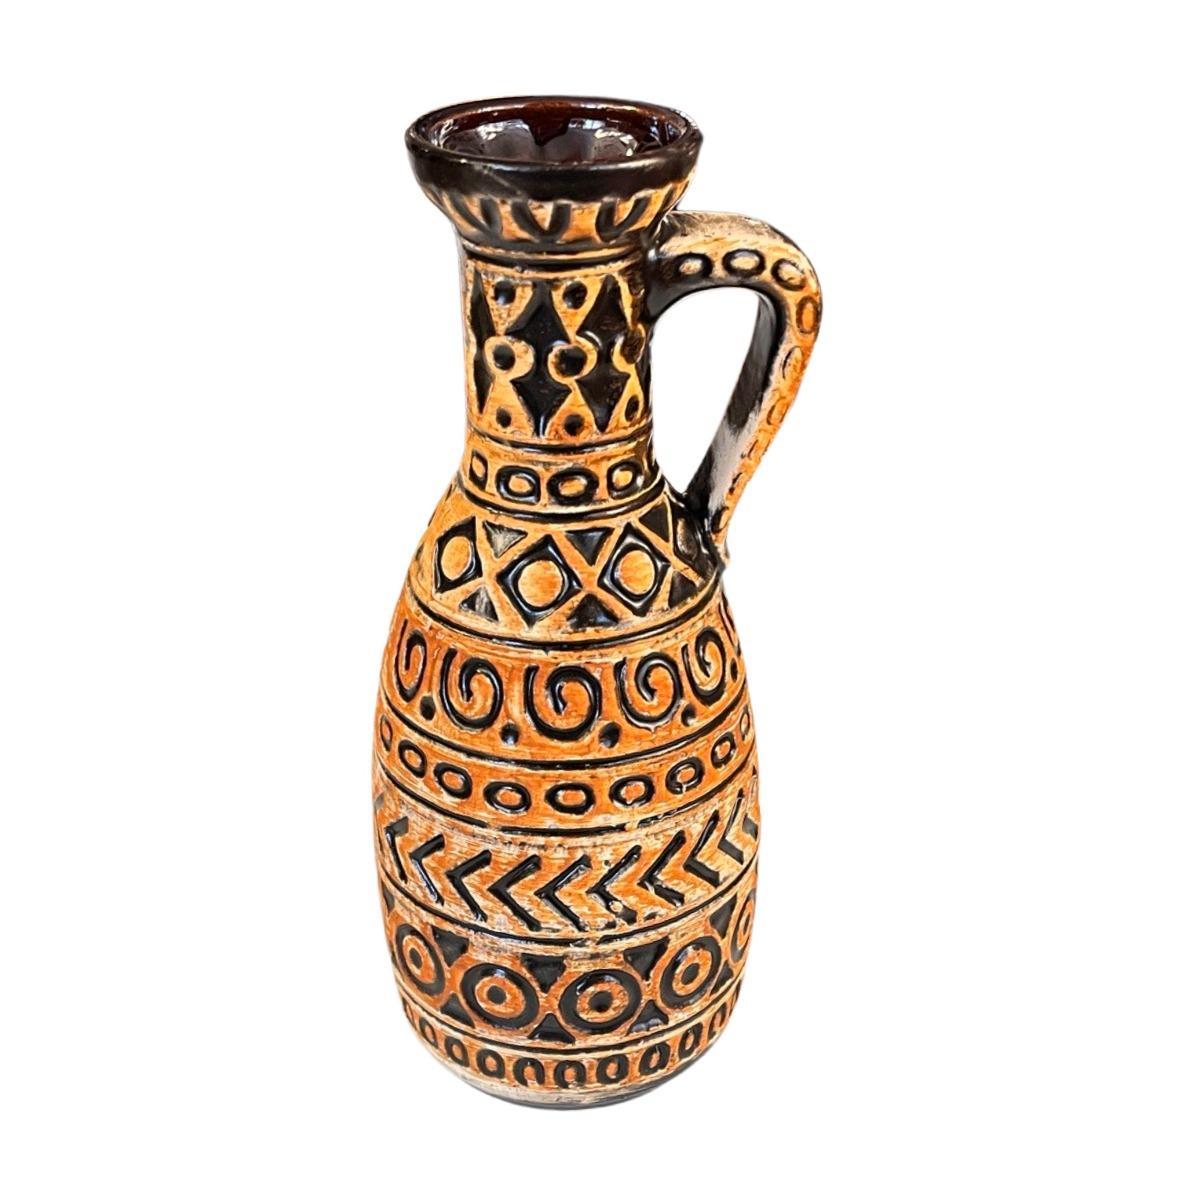 Wazon Bay Keramik 93 - 25 w kolorze ochry / czarnego, vintage Mid Century Modern, ceramika z Niemiec 0 Full Screen